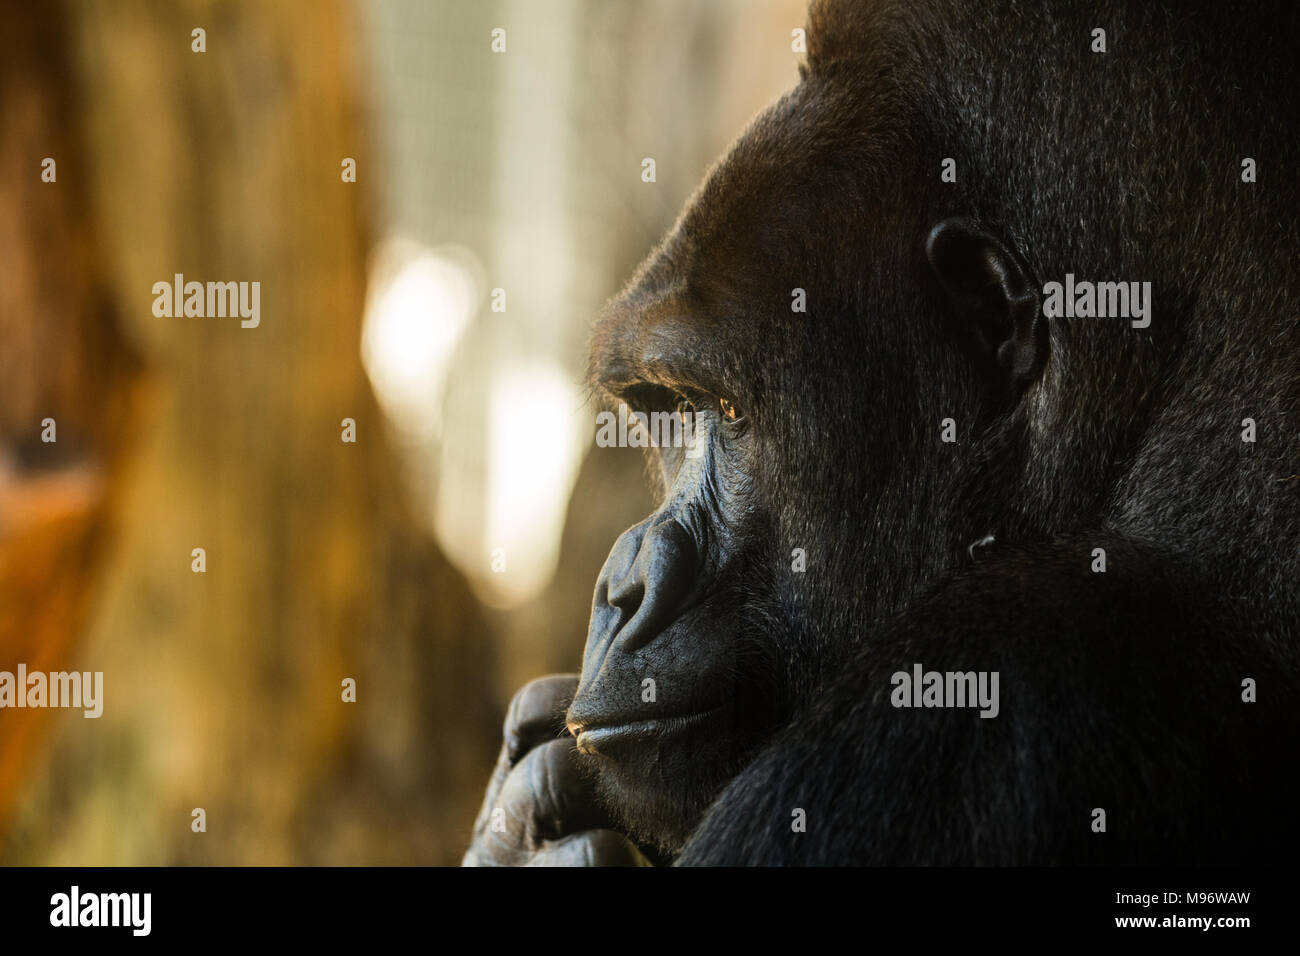 Cerca de un gorila que mira hacia fuera, en la reflexión profunda. Foto de stock